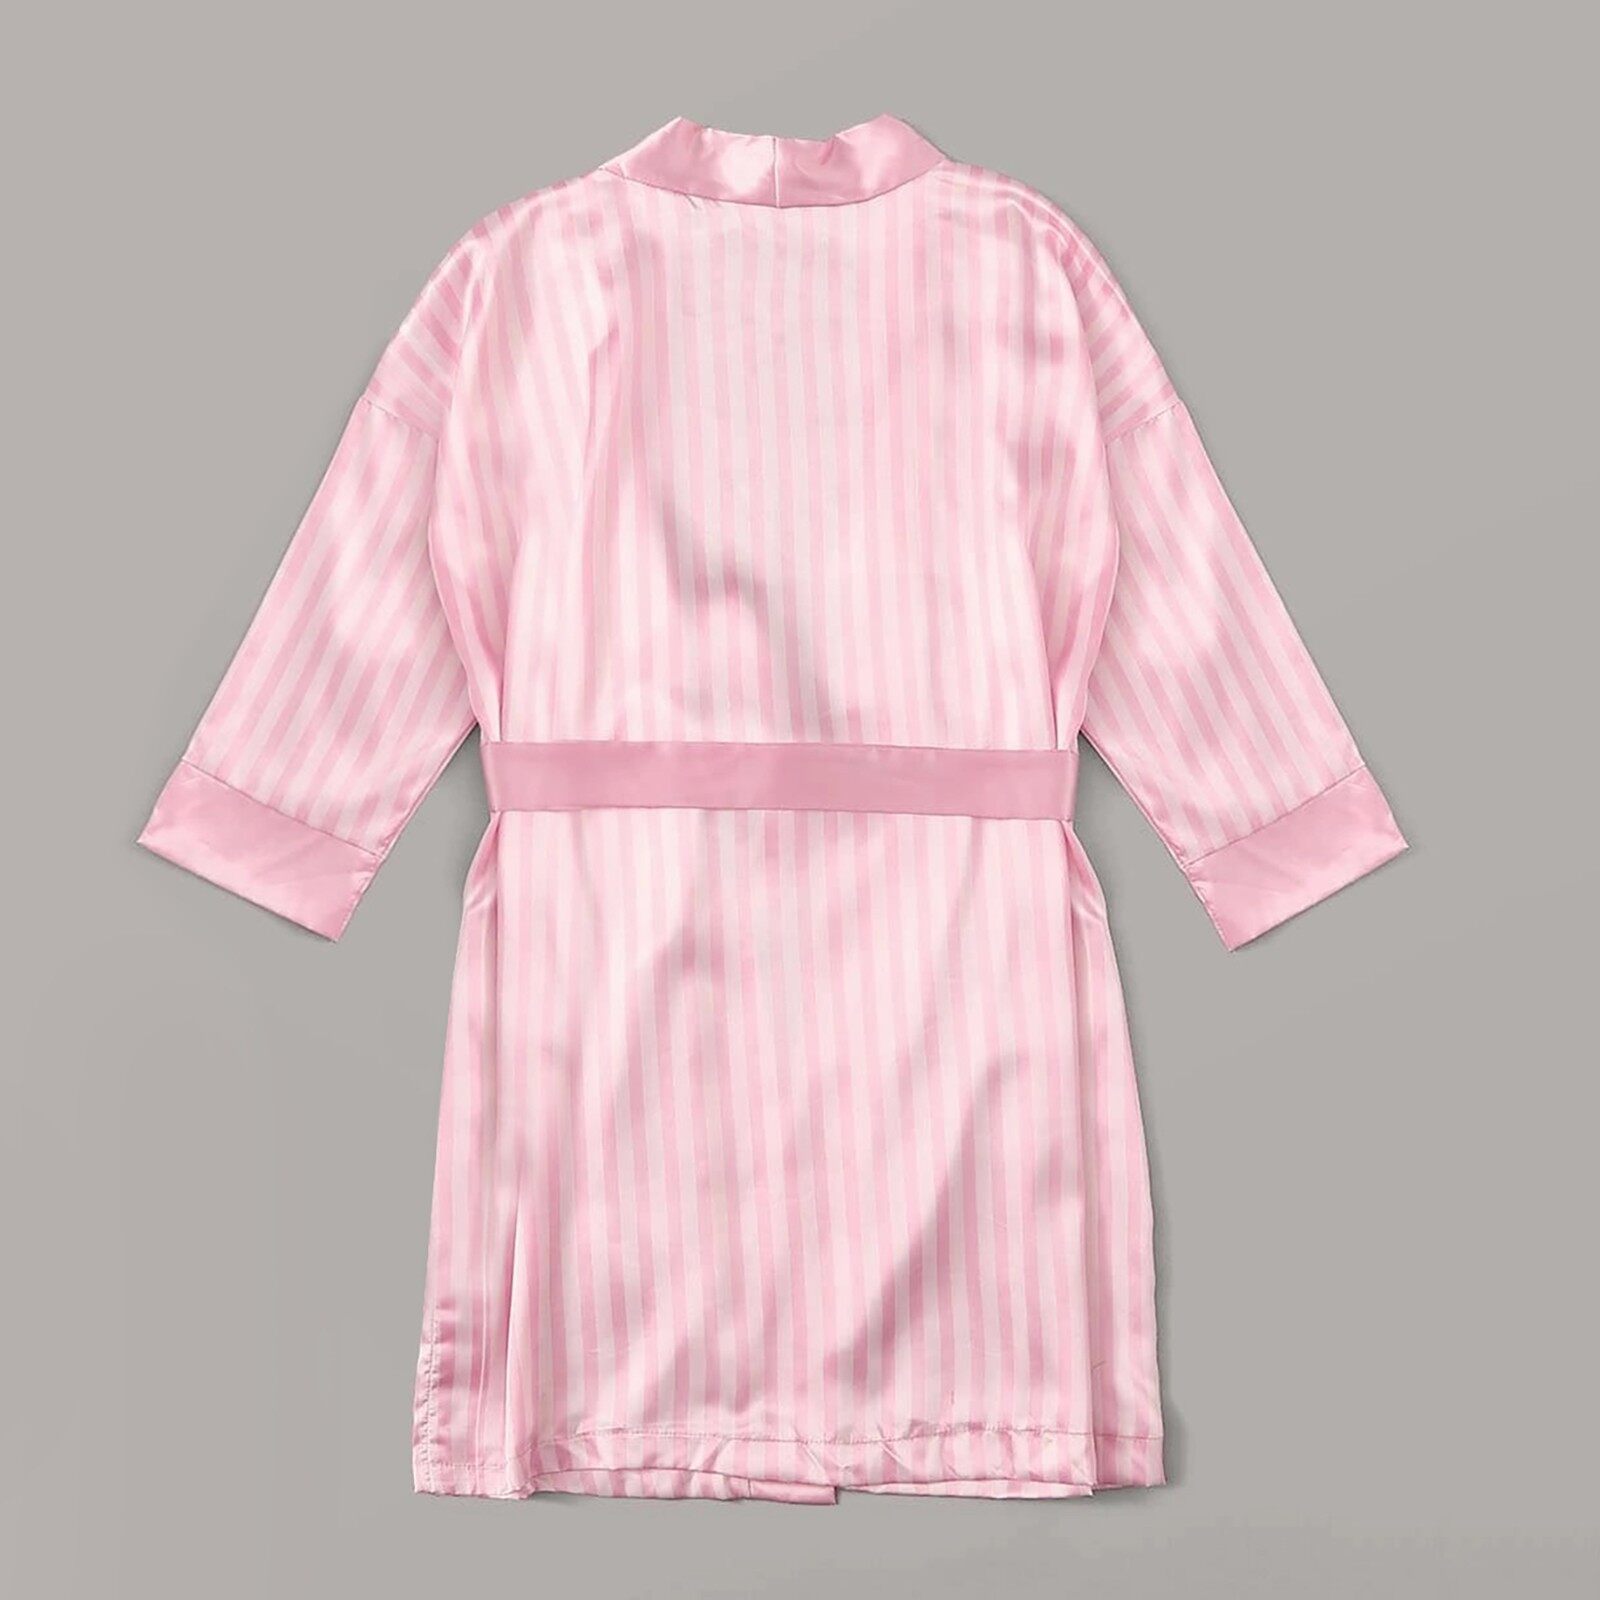 SJWYE MALL Đồ Ngủ Lụa Satin Váy Ngủ Nữ Đồ Lót Áo Choàng Đồ Lót Đồ Ngủ Bộ Váy Ngoại Cỡ Màu Hồng Polyester Gợi Cảm 4